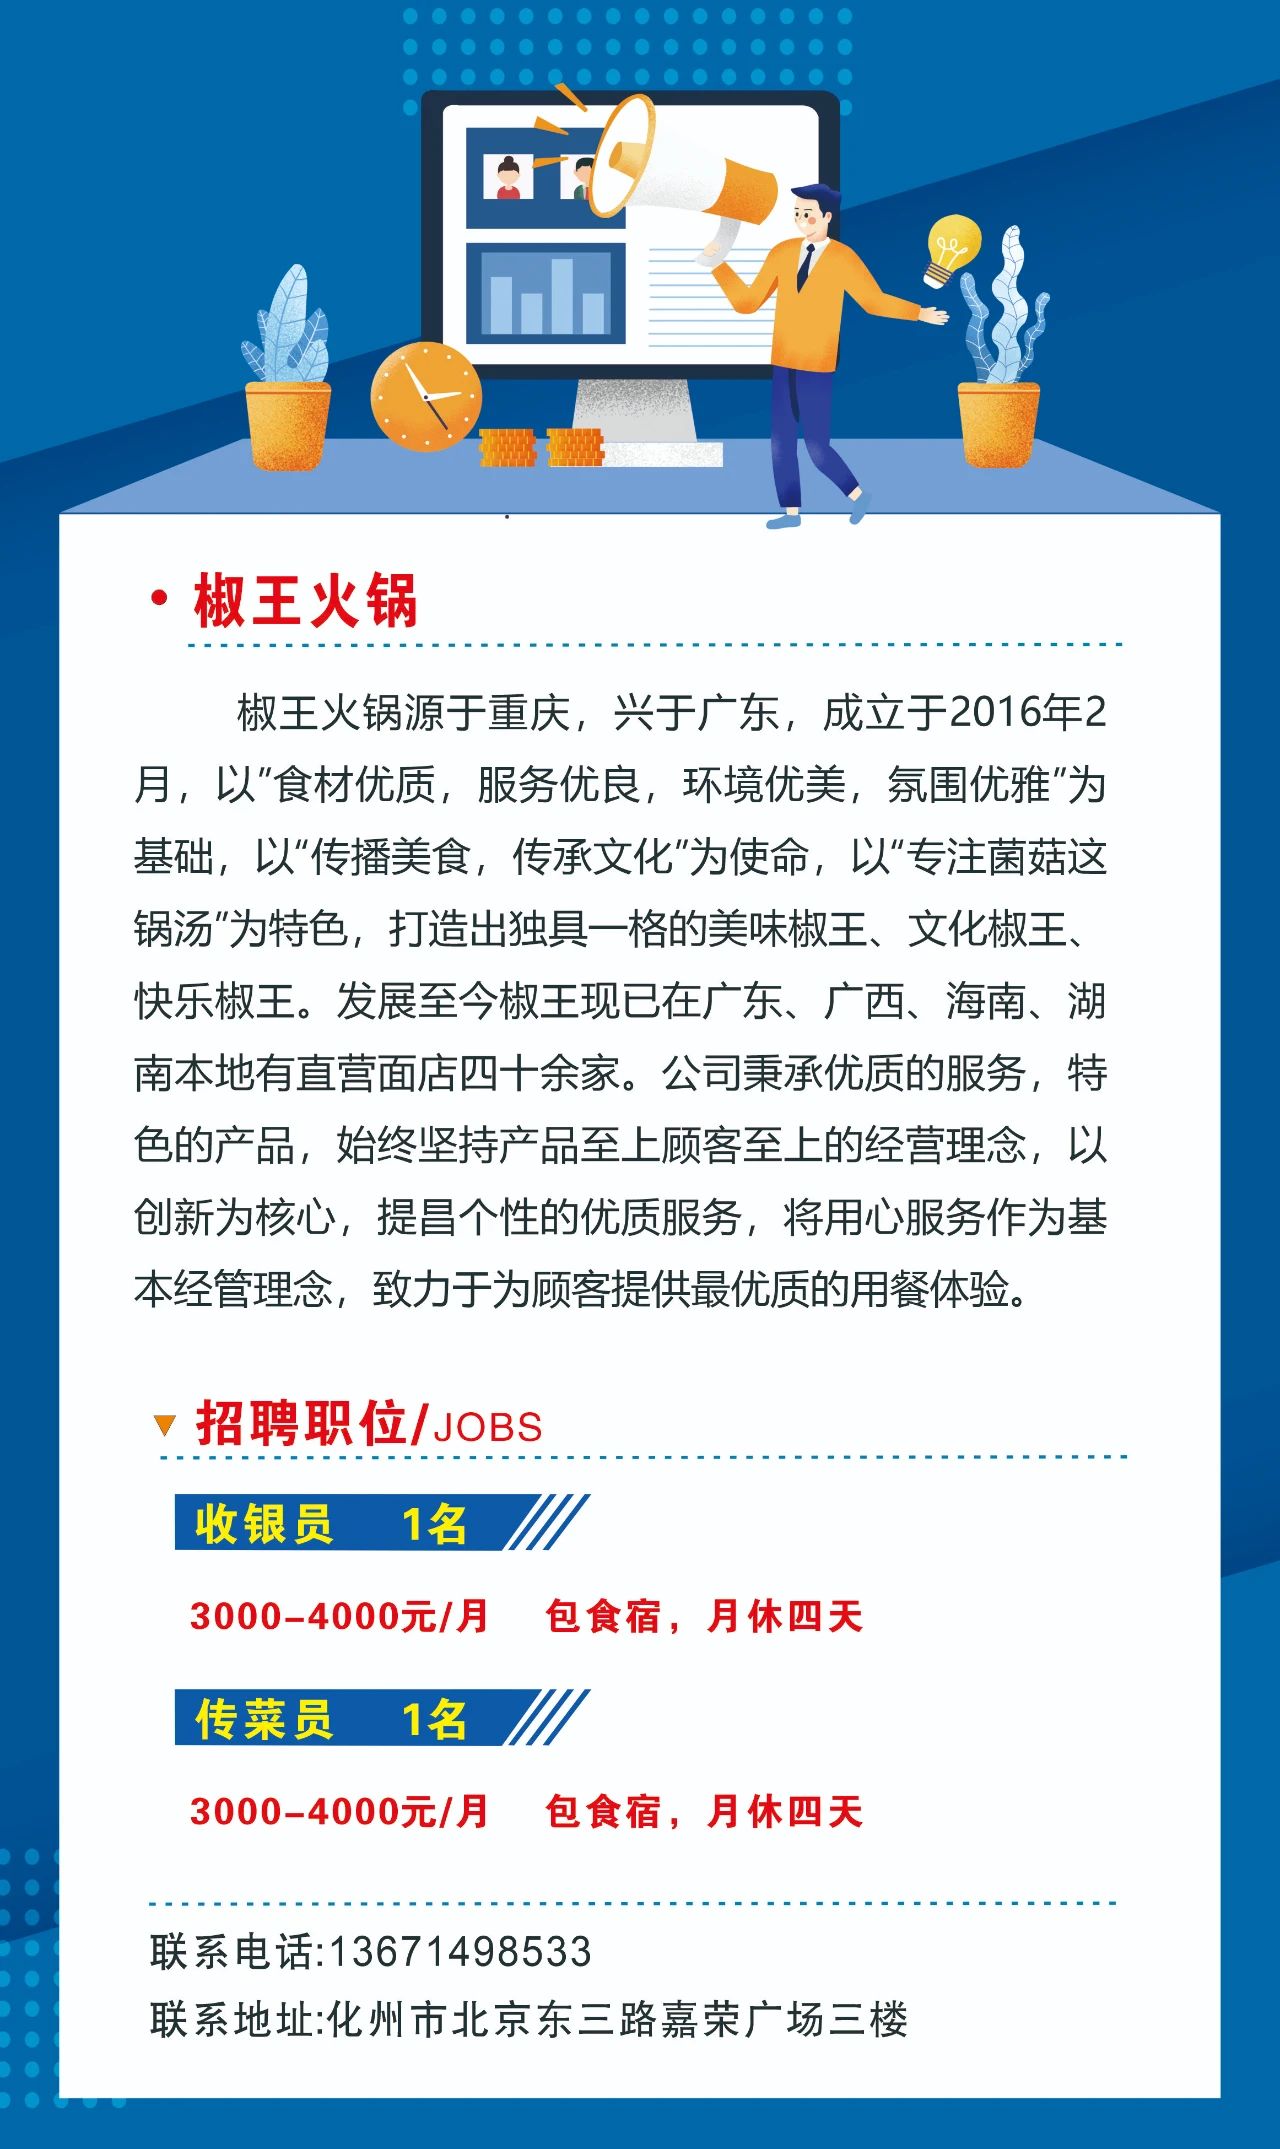 化州市椒王火锅2021招聘启事 - 化州信息网 - 化州信息网